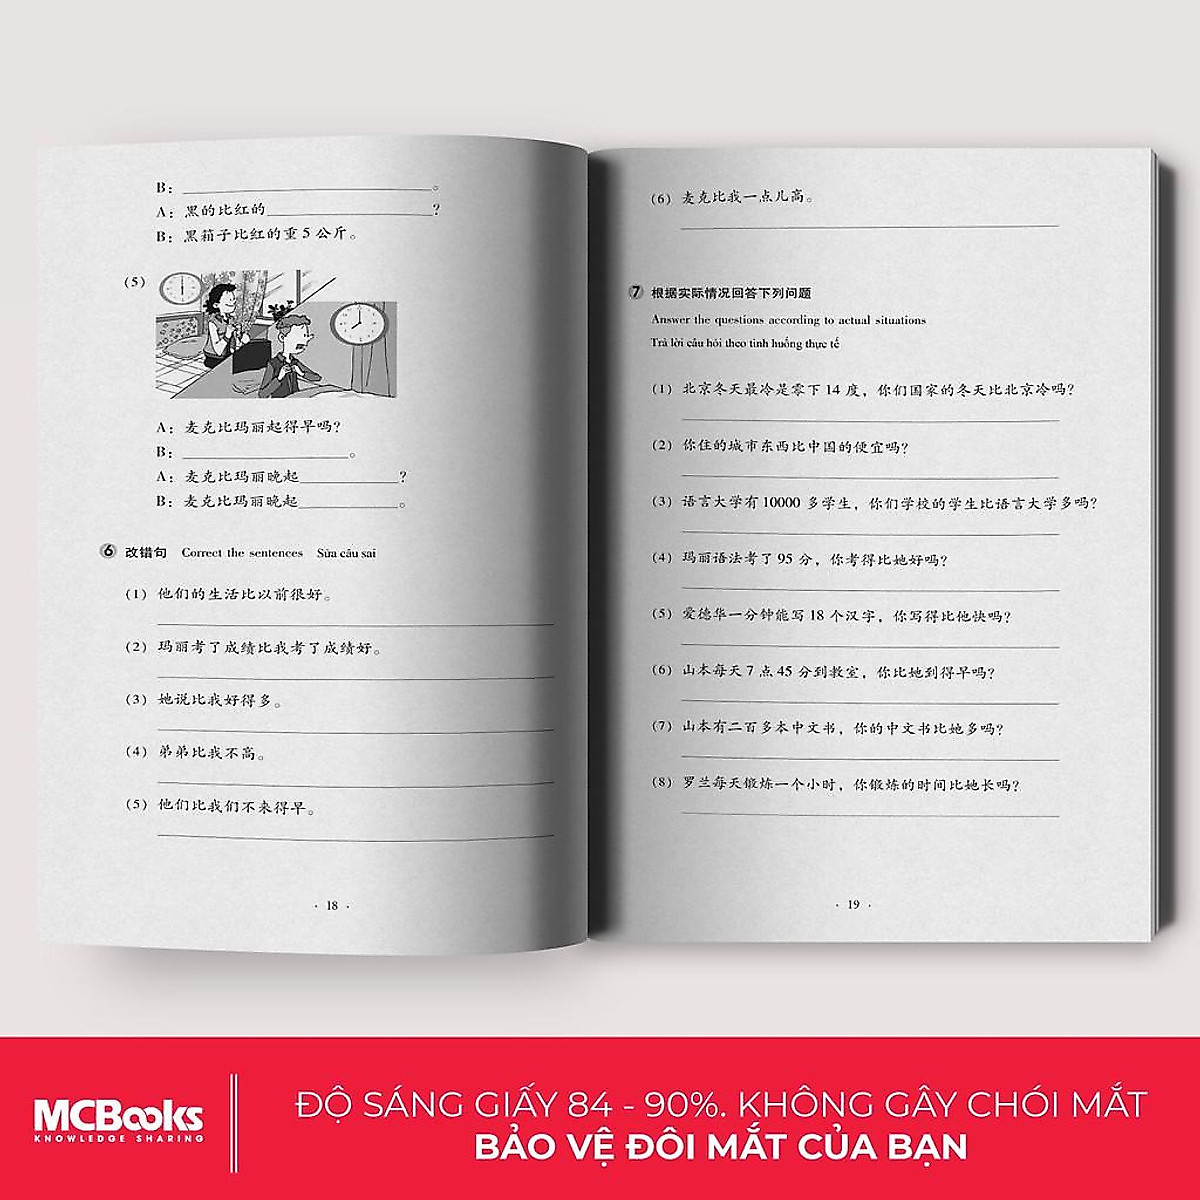 Giáo Trình Hán Ngữ 3 - Tập 2 Quyển Thượng - Dành Cho Người Học Cơ Bản (Học Cùng App MCBooks) - MinhAnBooks